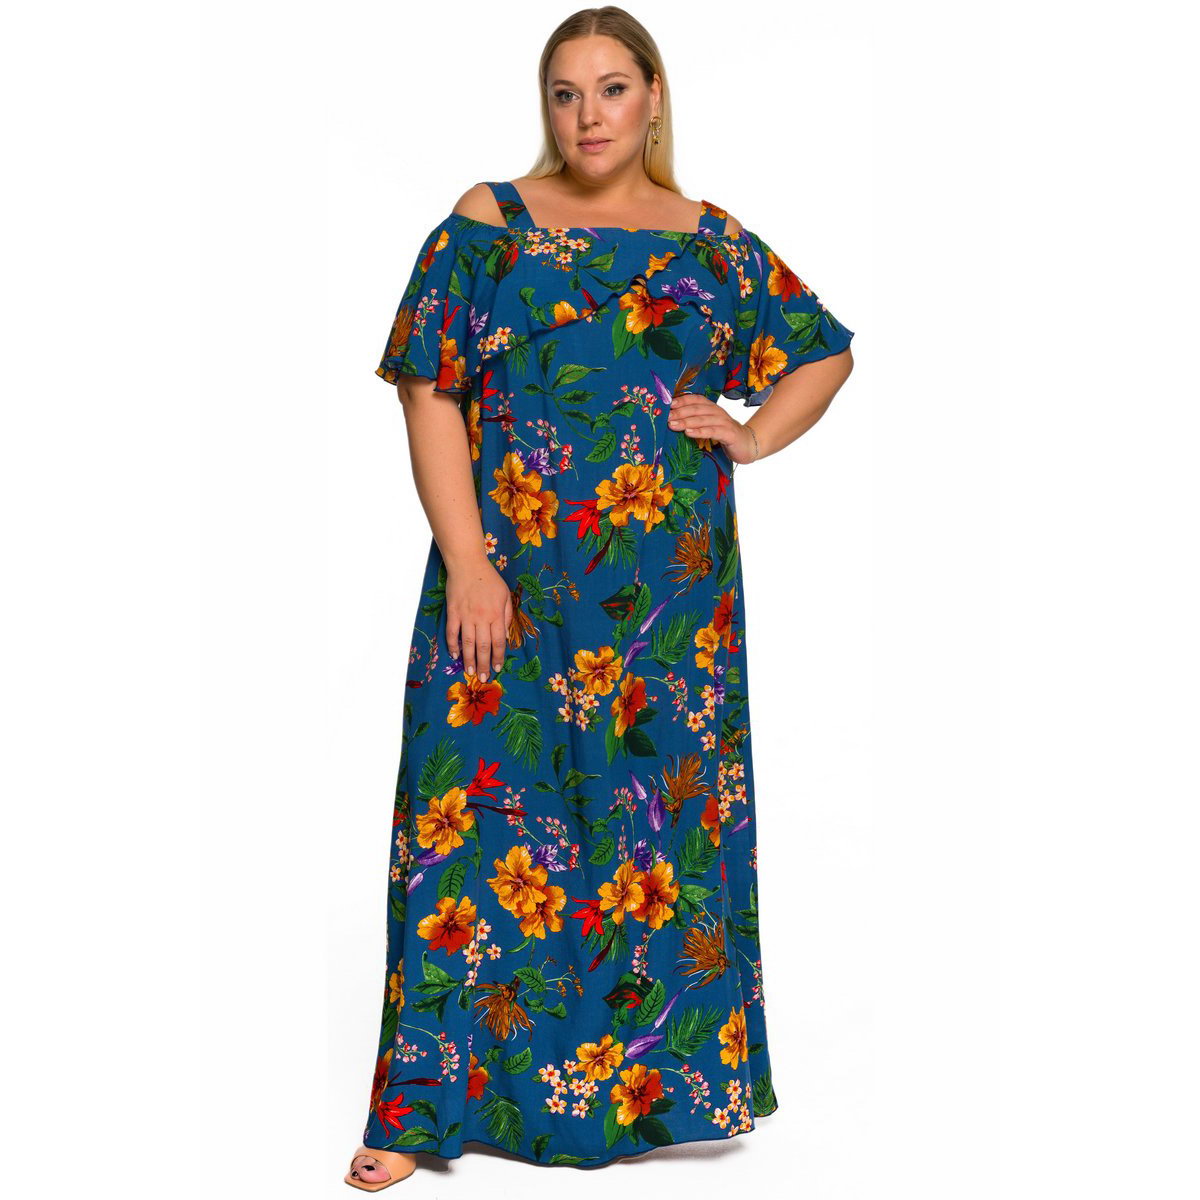 Платье-сарафан с воланом по горловине из штапеля, принт цветочный, фон джинсовый